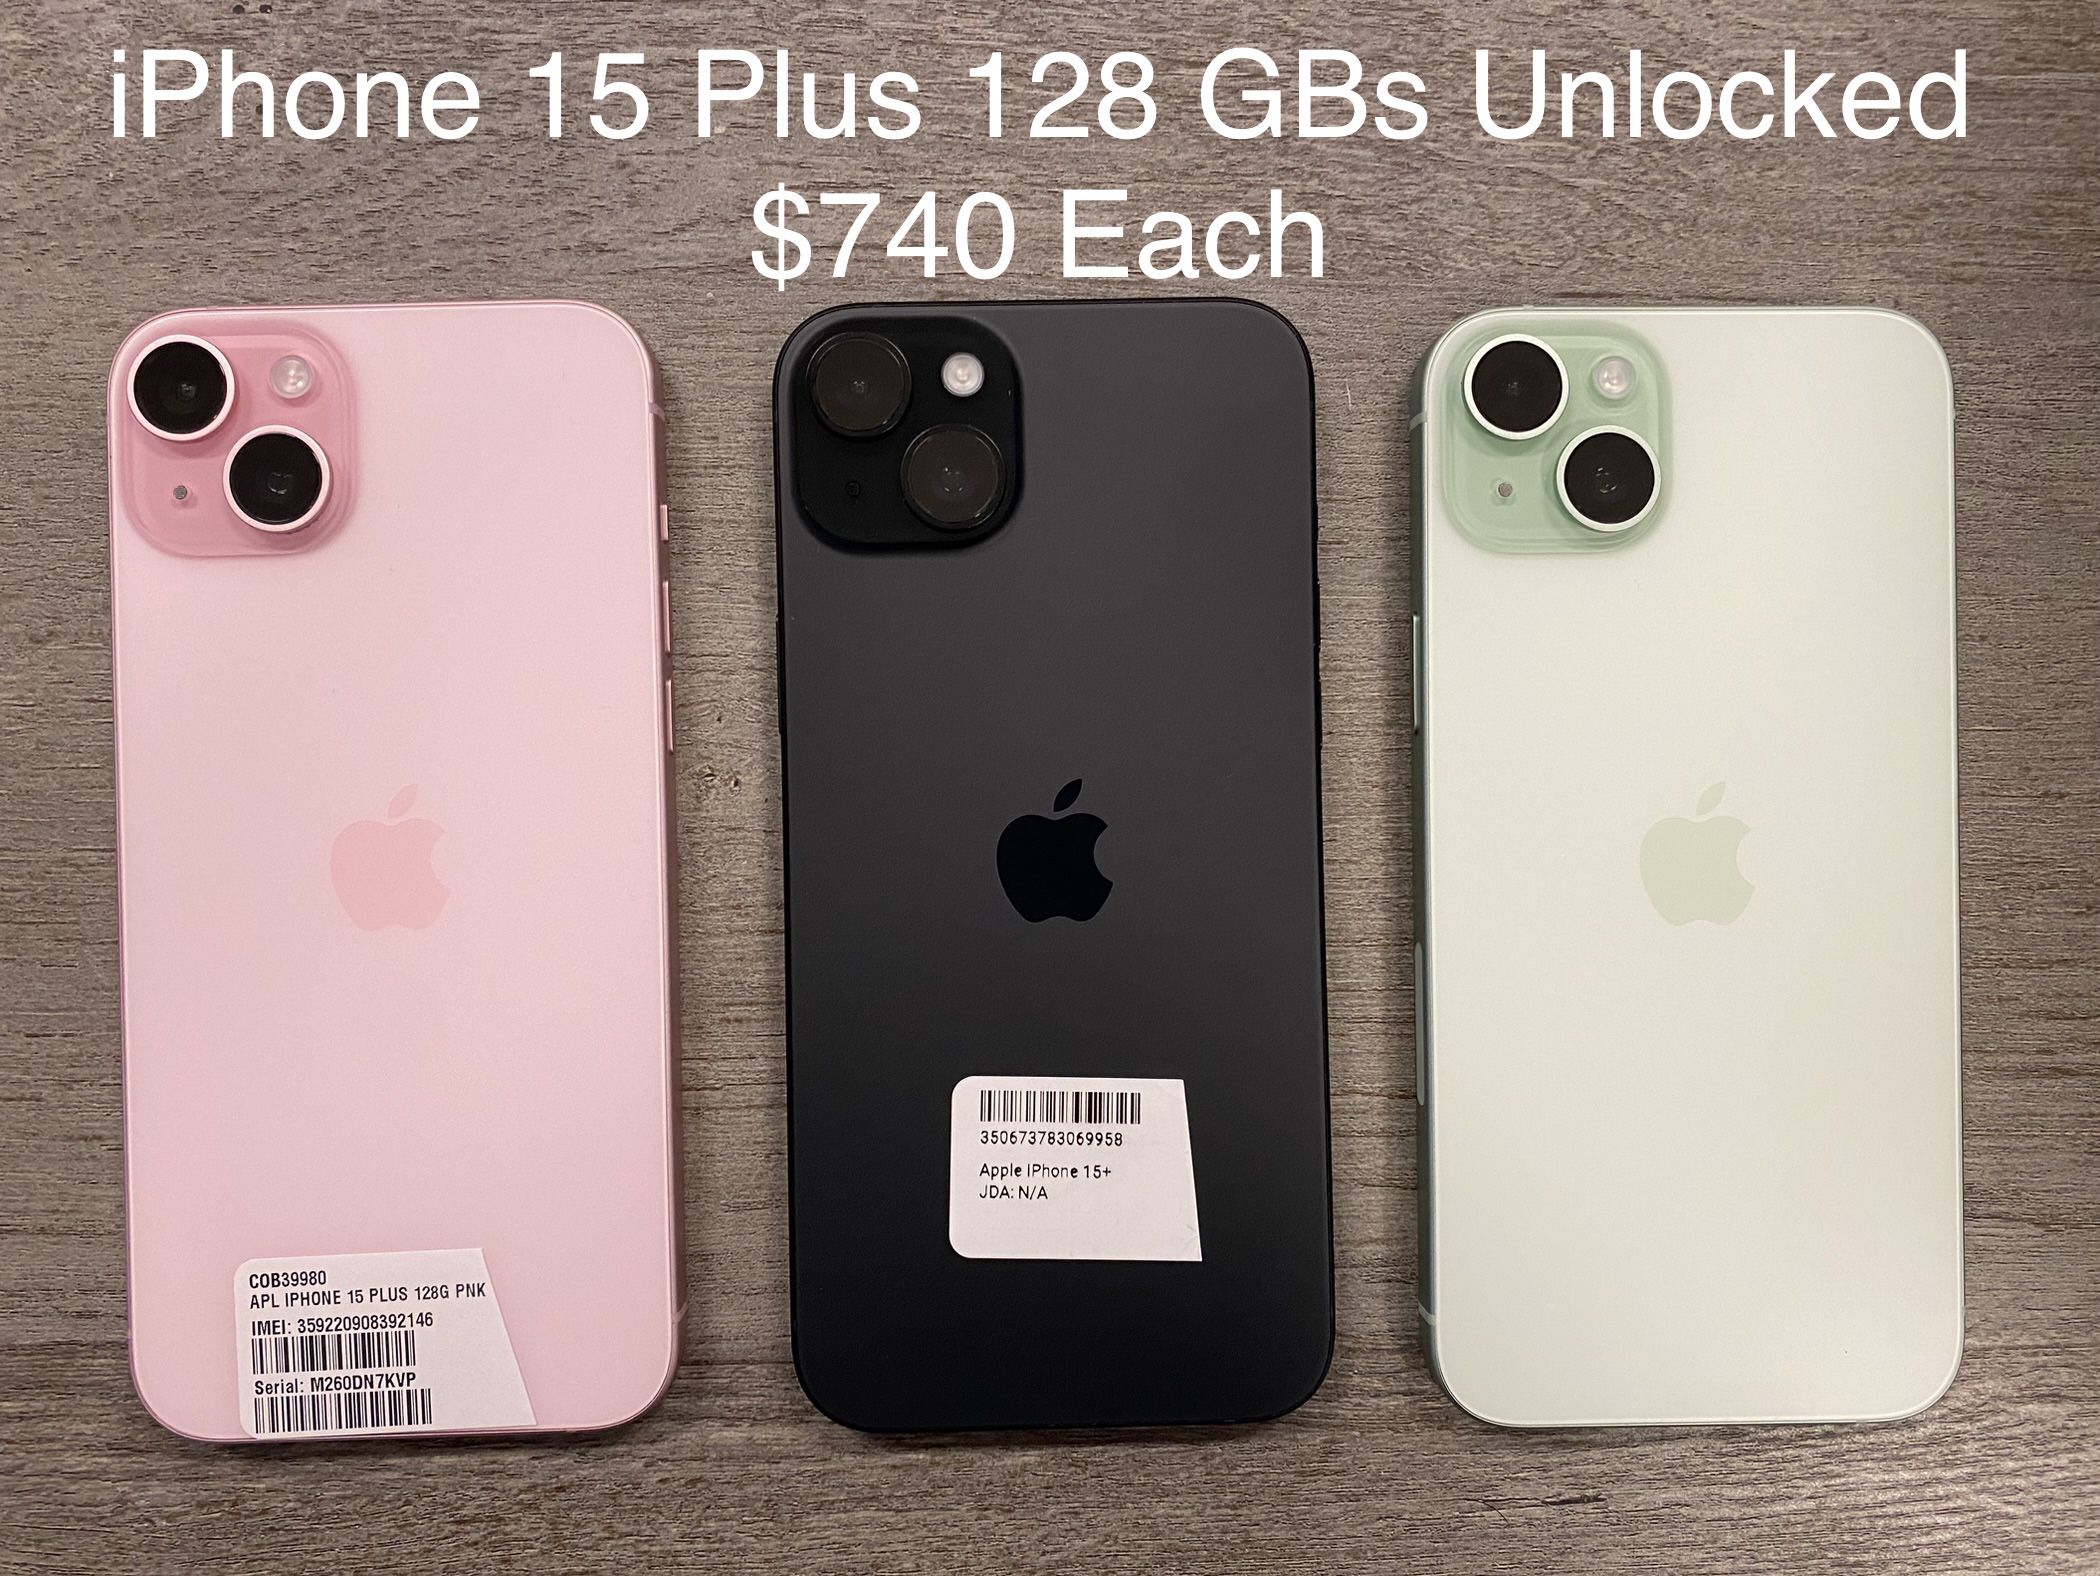 iPhone 15 Plus 128 GBs Unlocked $740 Each